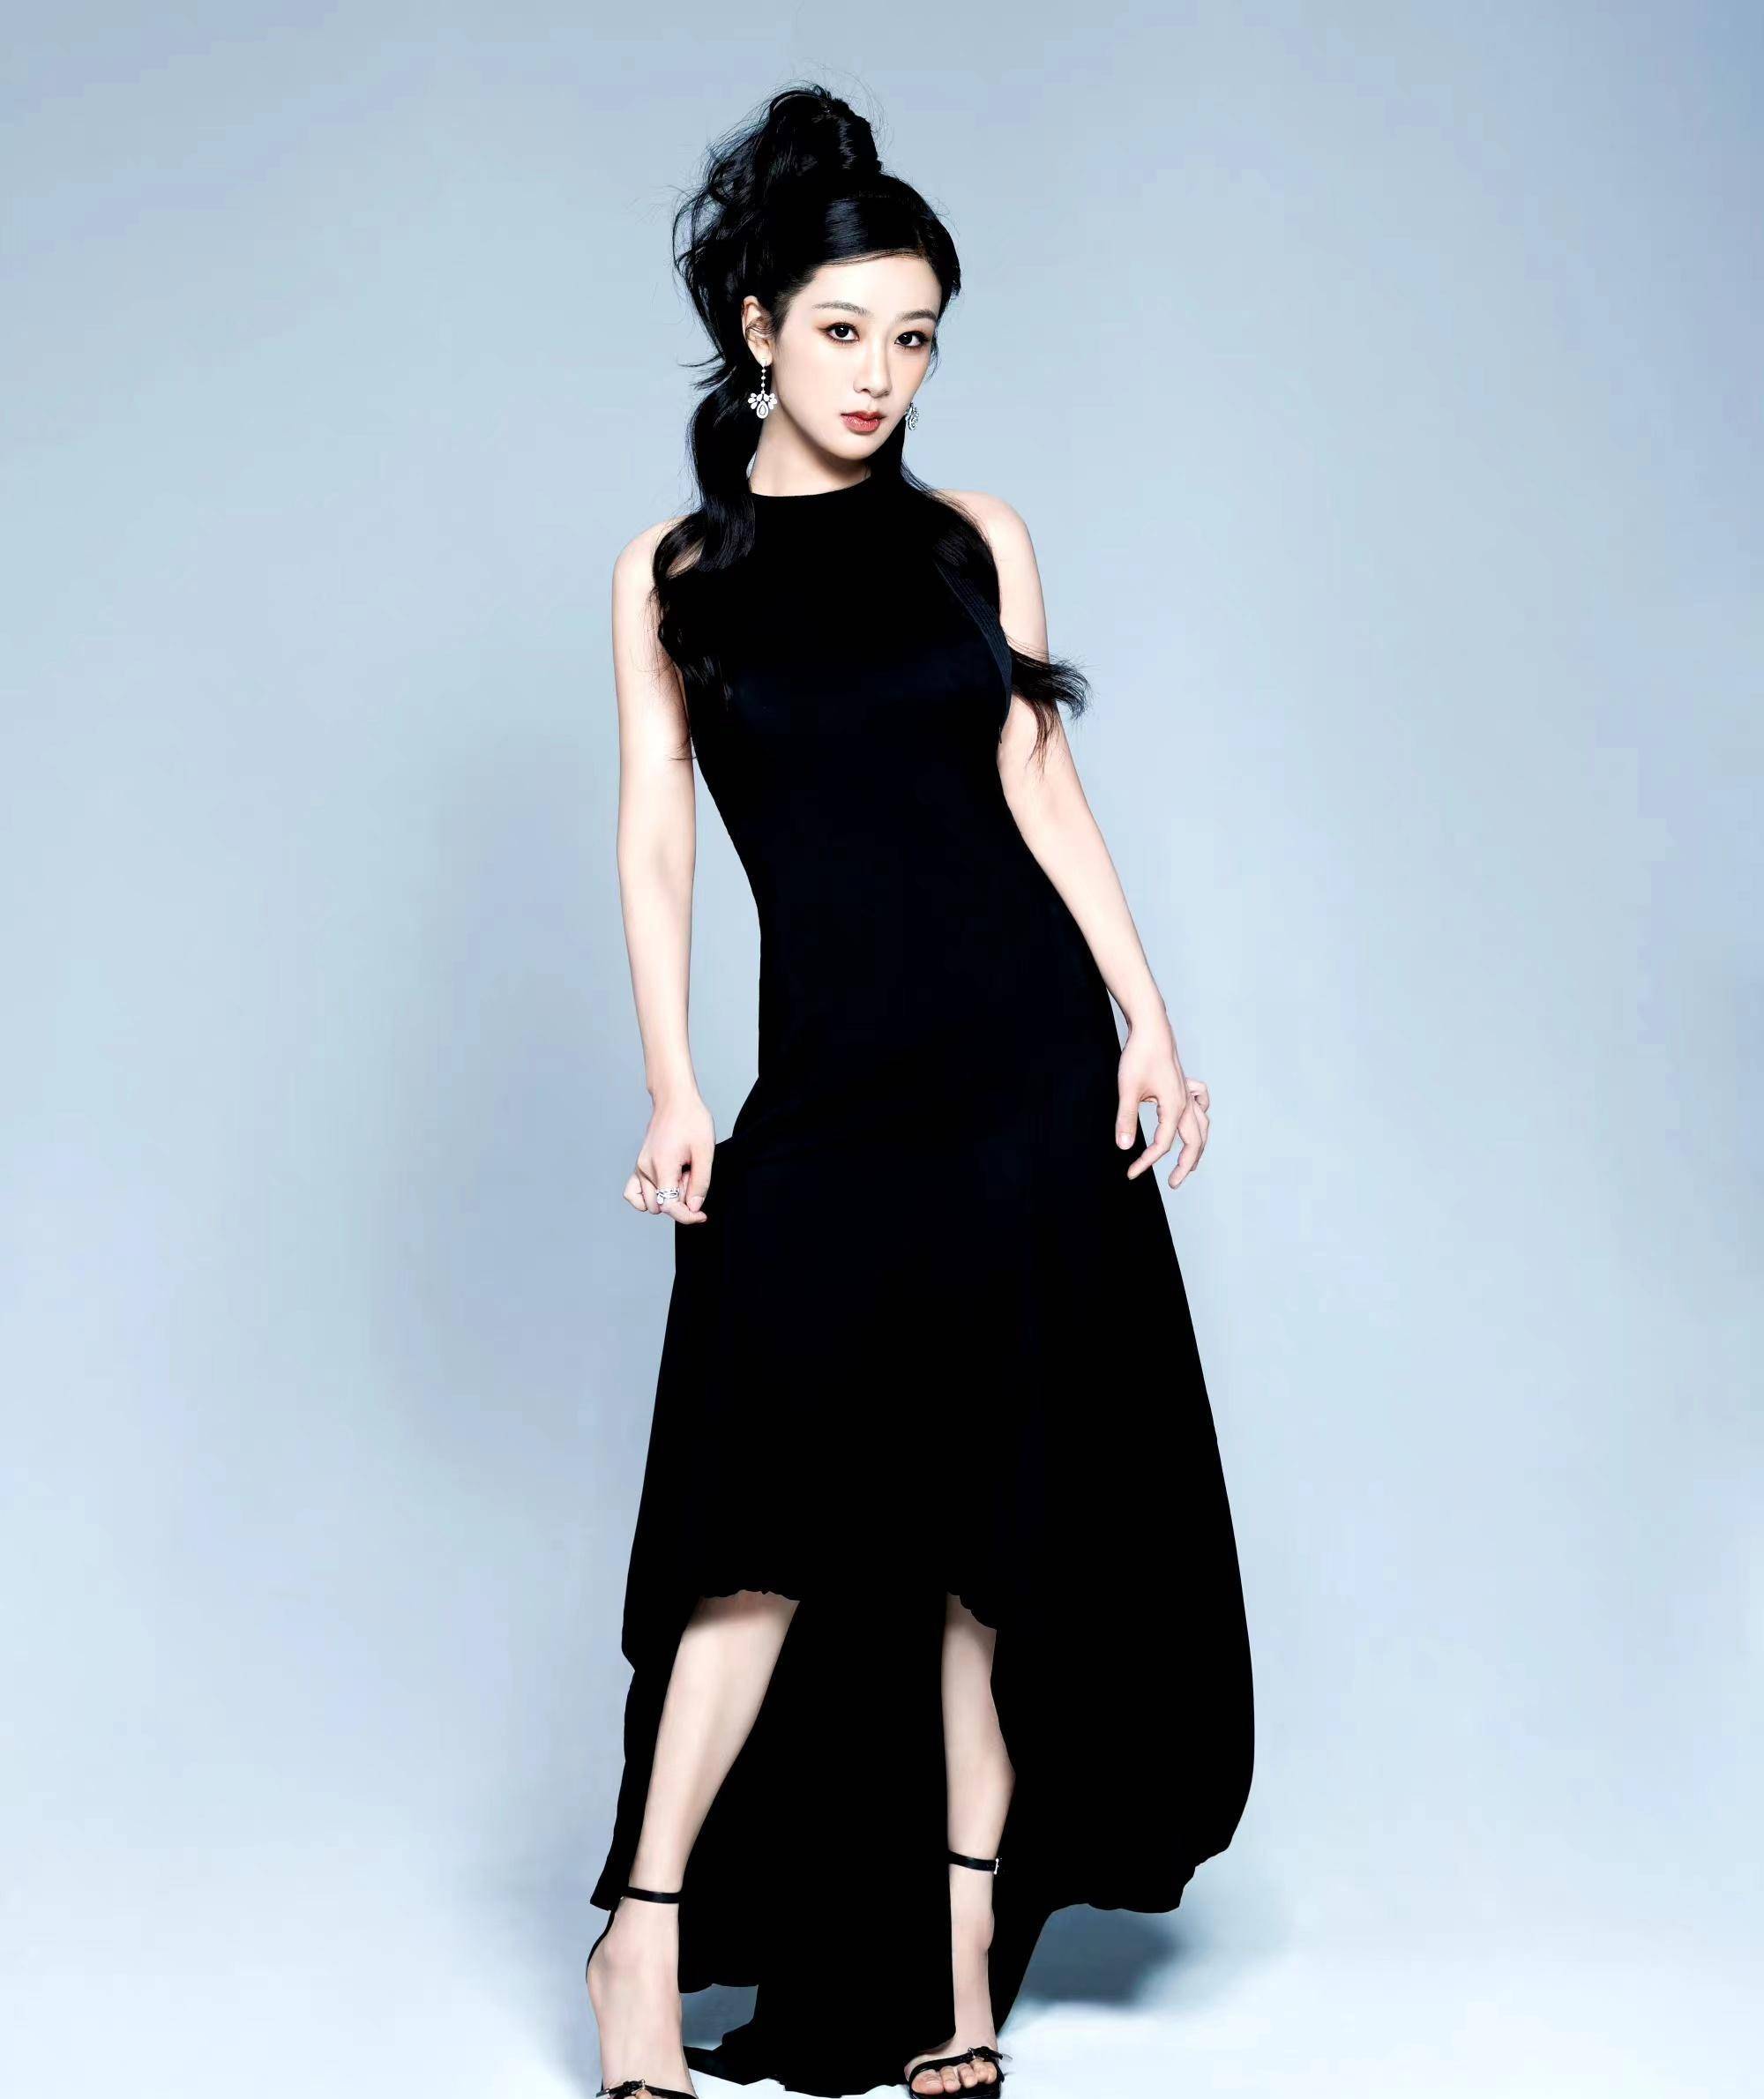 杨紫一改造型,身穿黑色挂脖连衣裙搭配烟熏妆,个性十足的辣妹风!